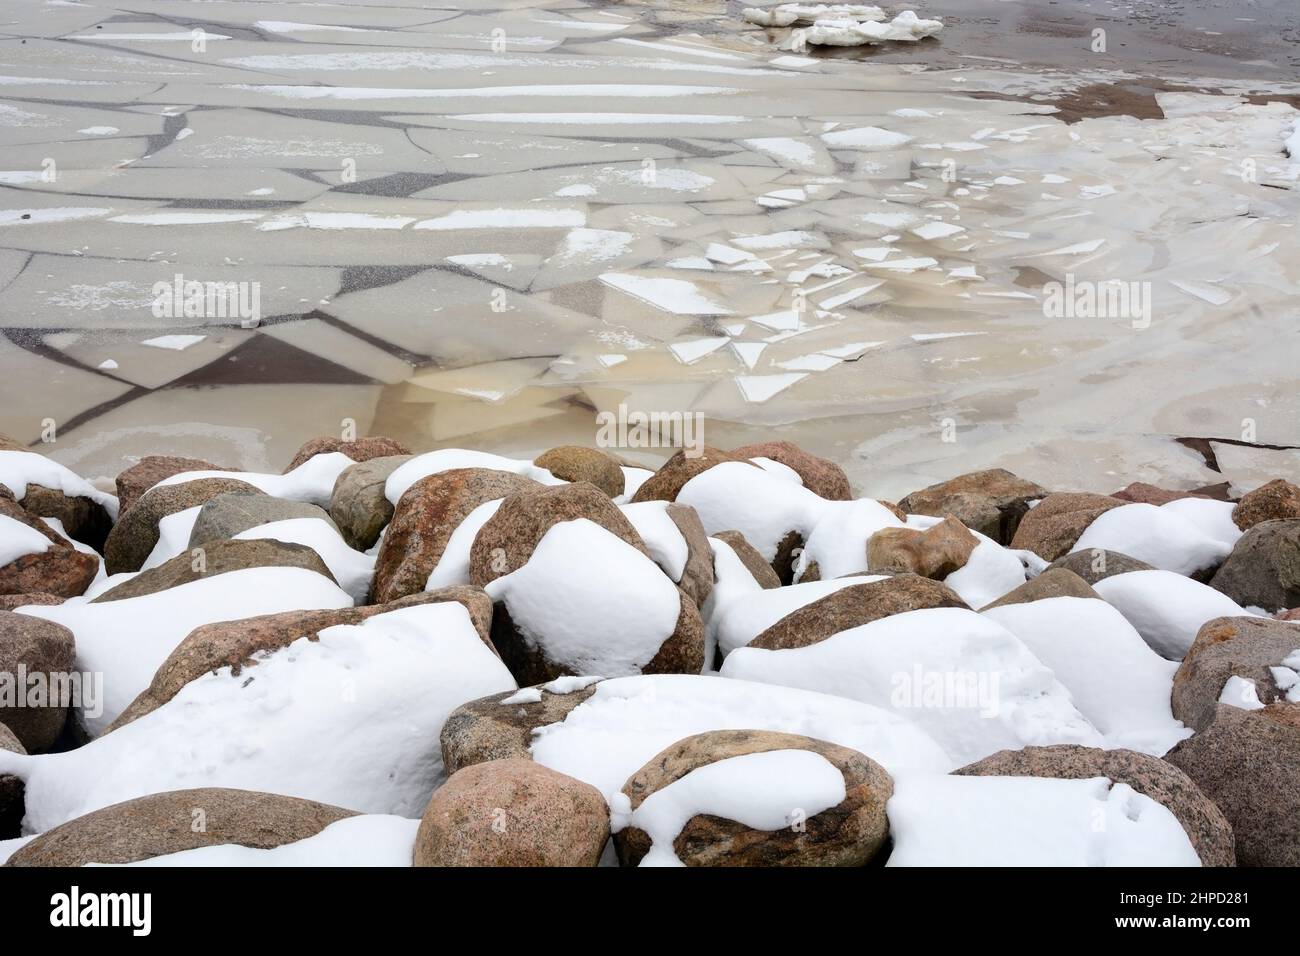 Die gefrorene Küste des Finnischen Meerbusens mit einer bizarren Form von Eis. Zelenogorsk, Russland, Frühjahrssaison, Eisbrechung Stockfoto